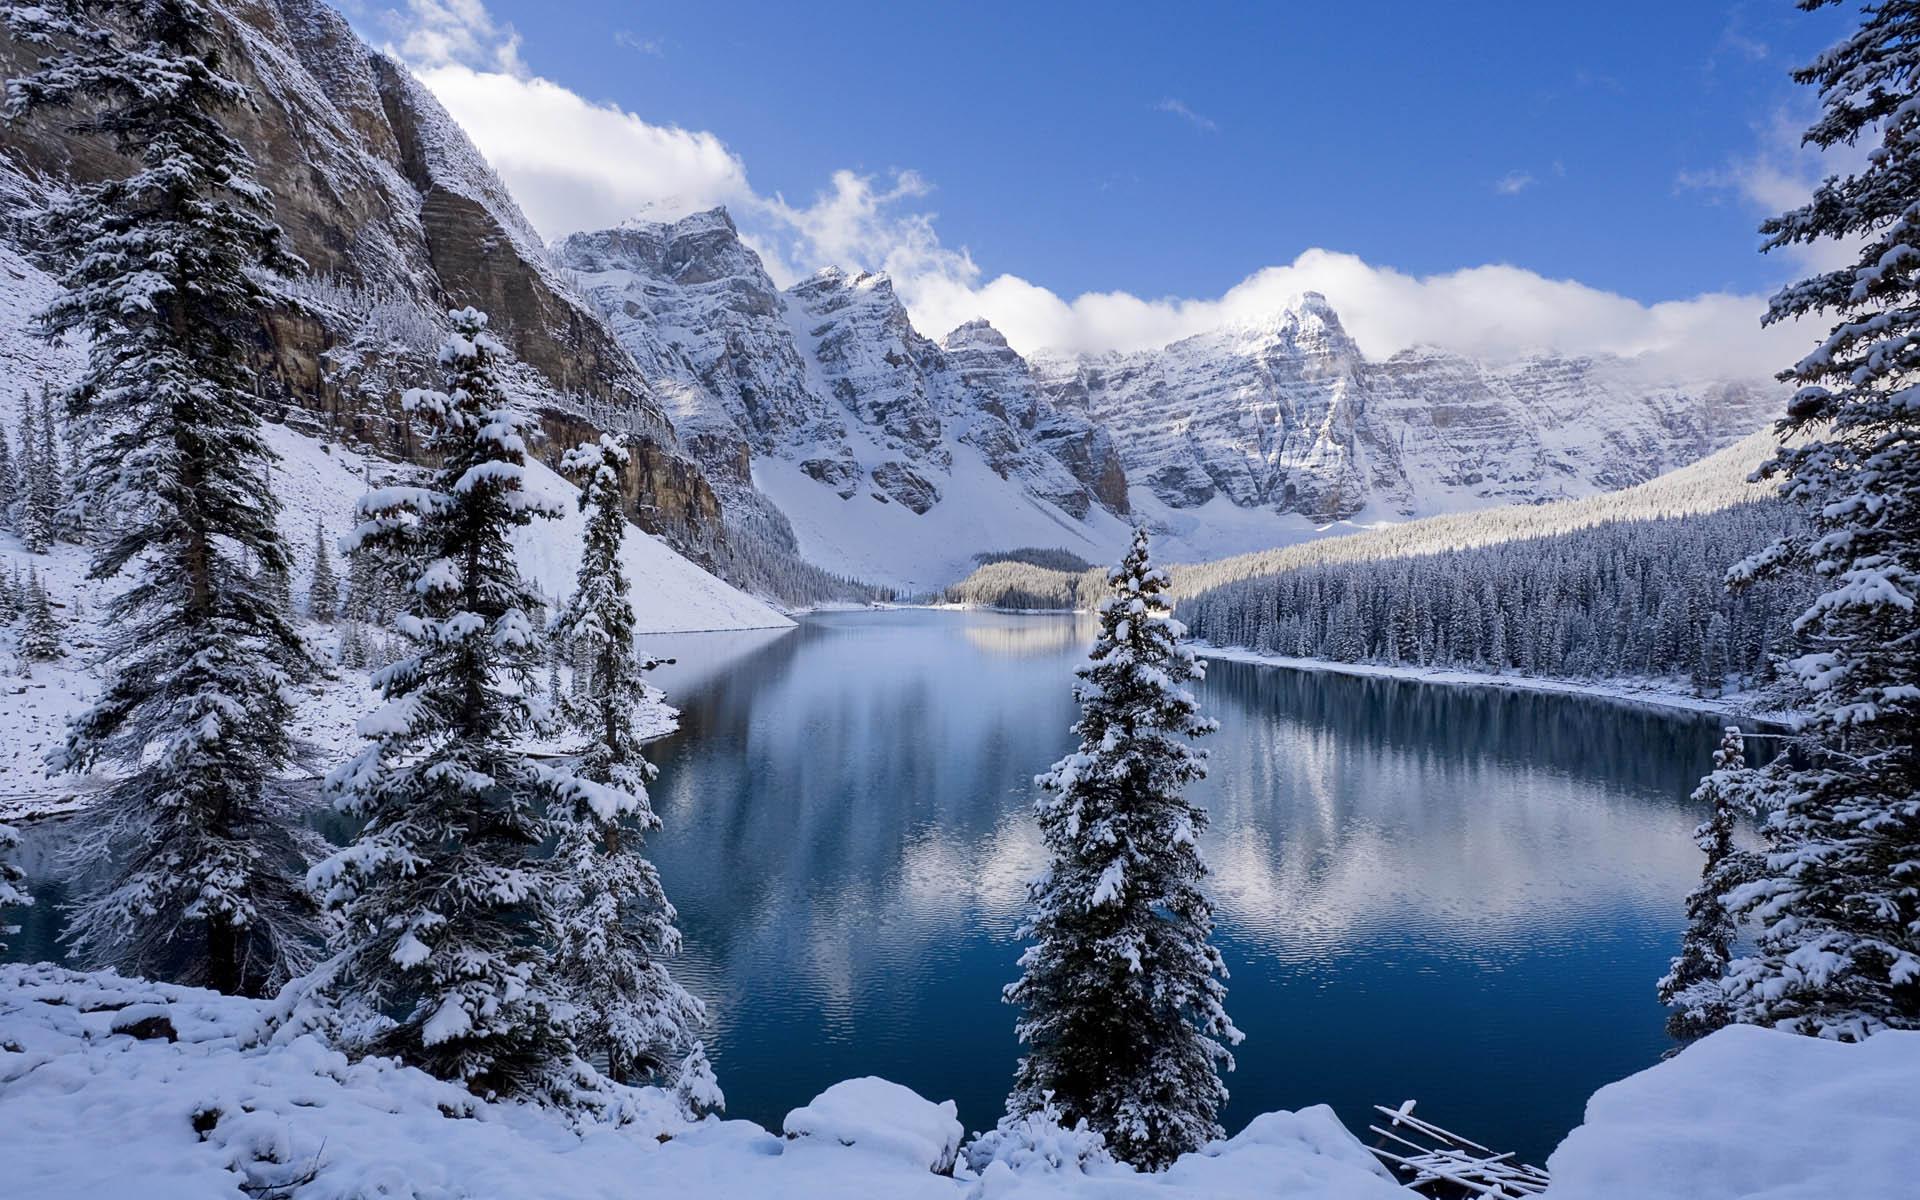 Lake Muntain Winter Scenes for Desktop Wallpapers